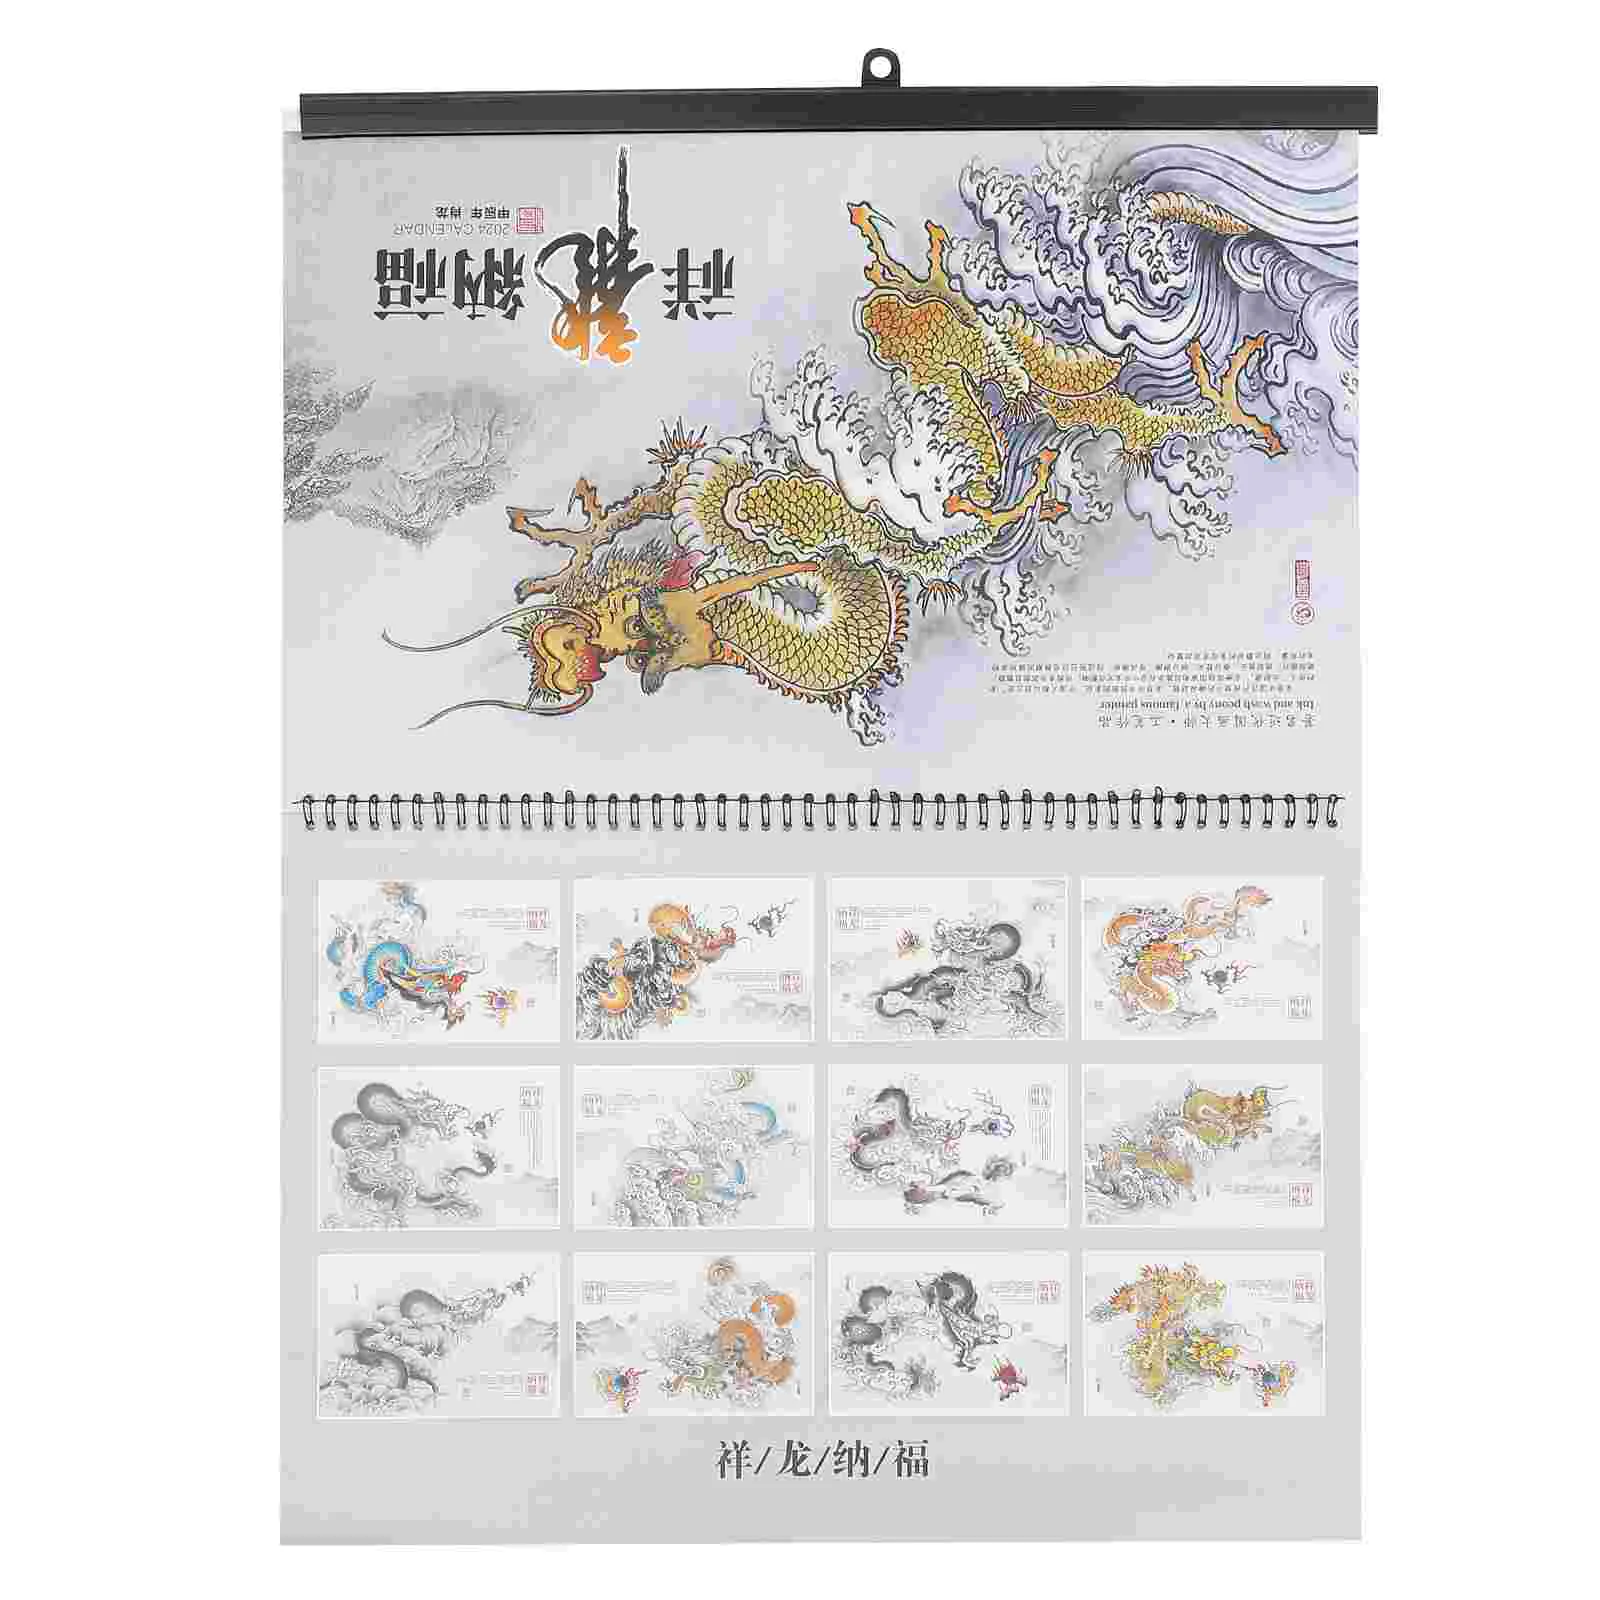 

Ежедневный календарь, подвесной календарь в китайском стиле, календарь на китайский новый год, подвесной календарь